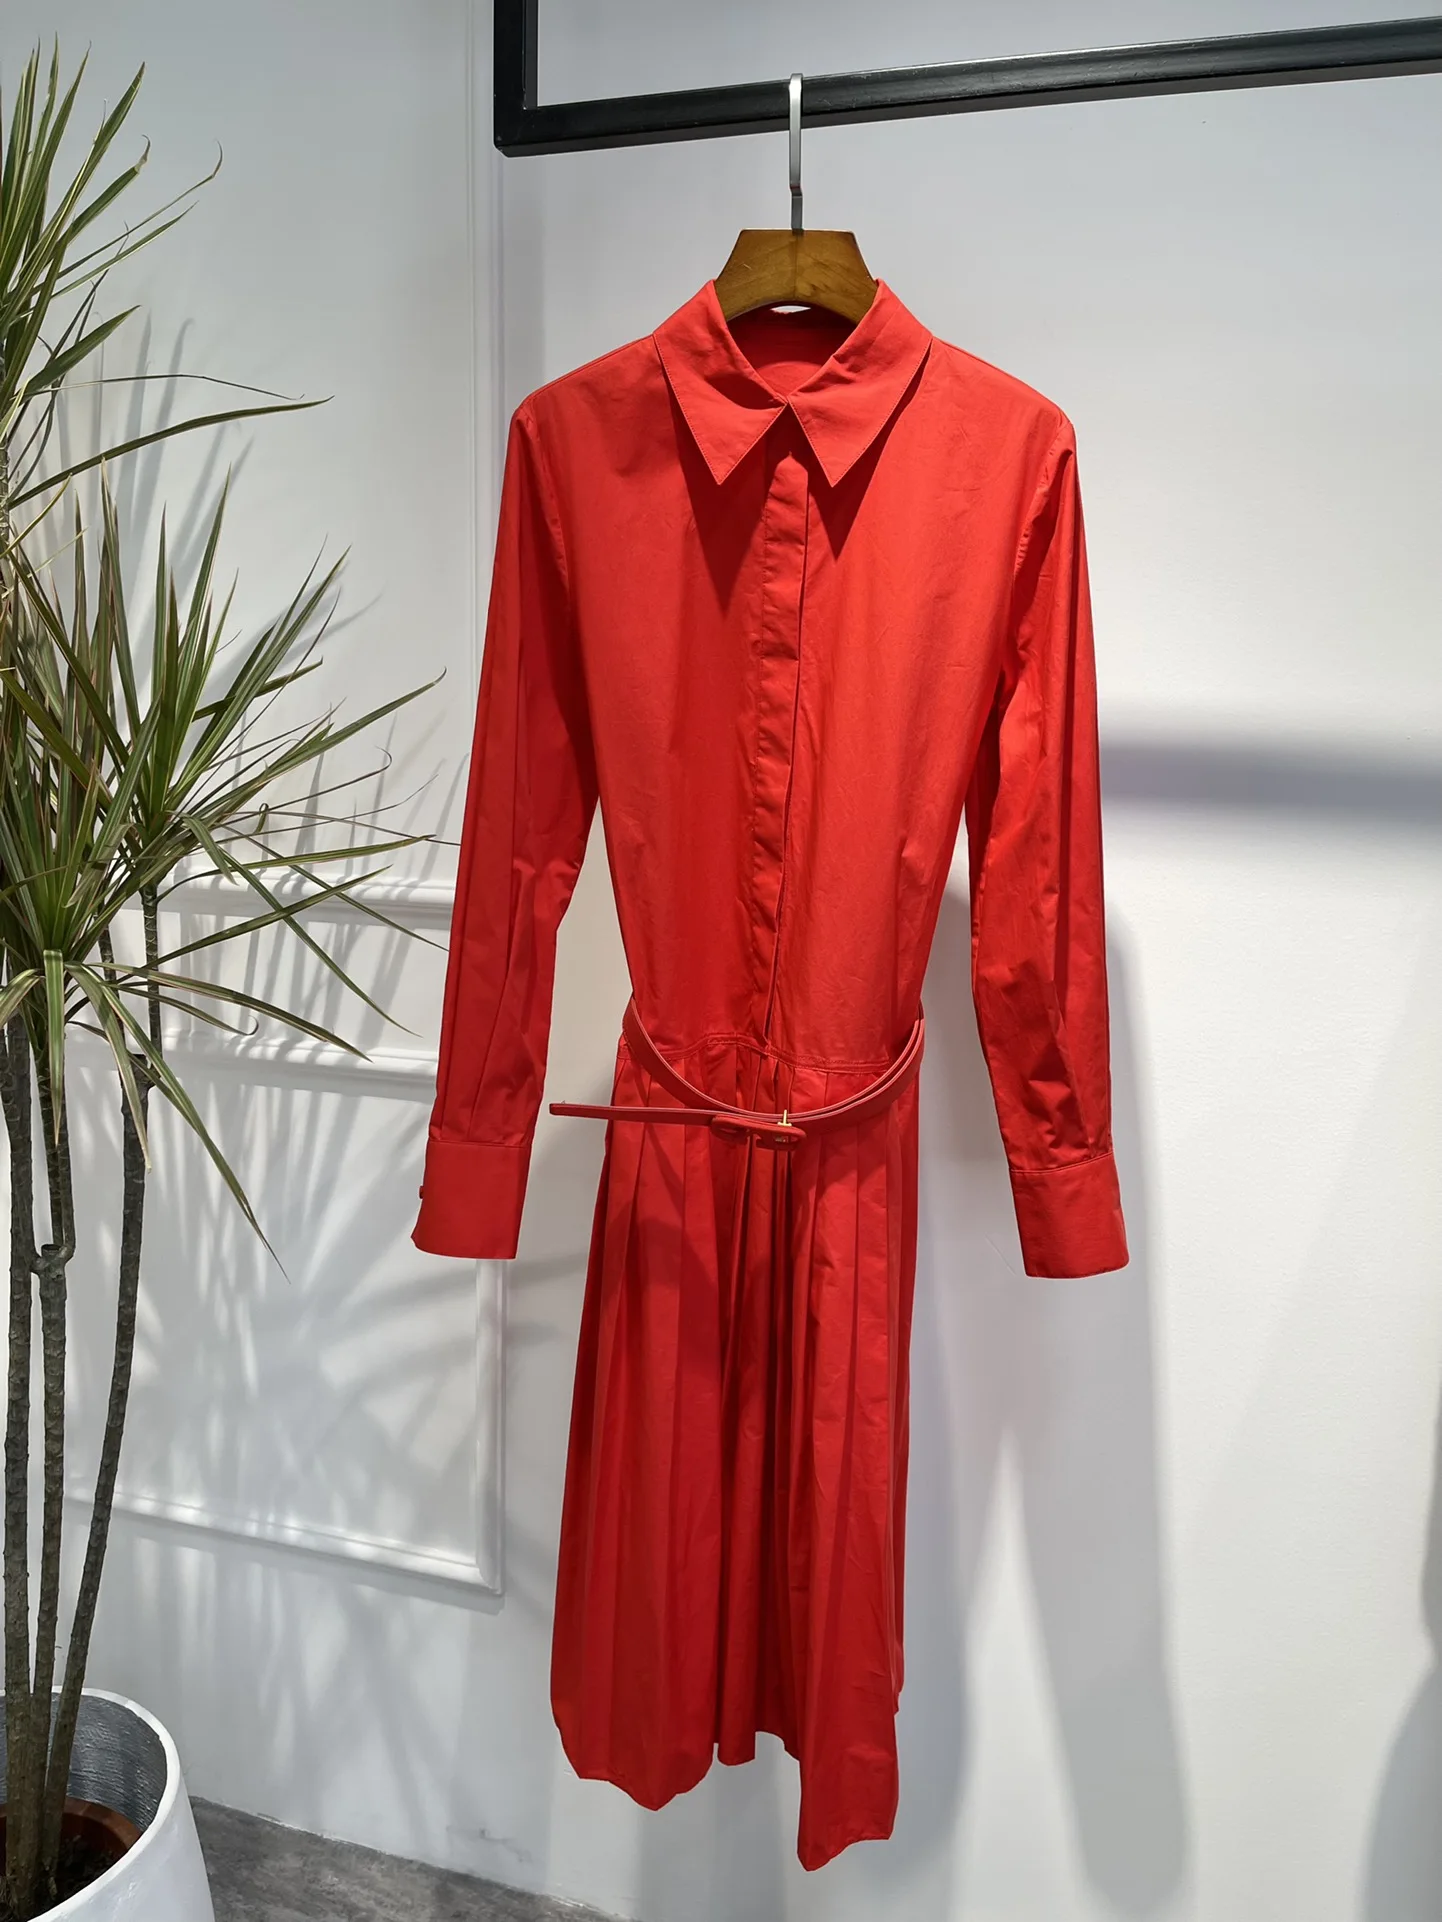 

Женское плиссированное платье-трапеция, элегантное красное Хлопковое платье до середины икры с поясом, весна-осень 2022